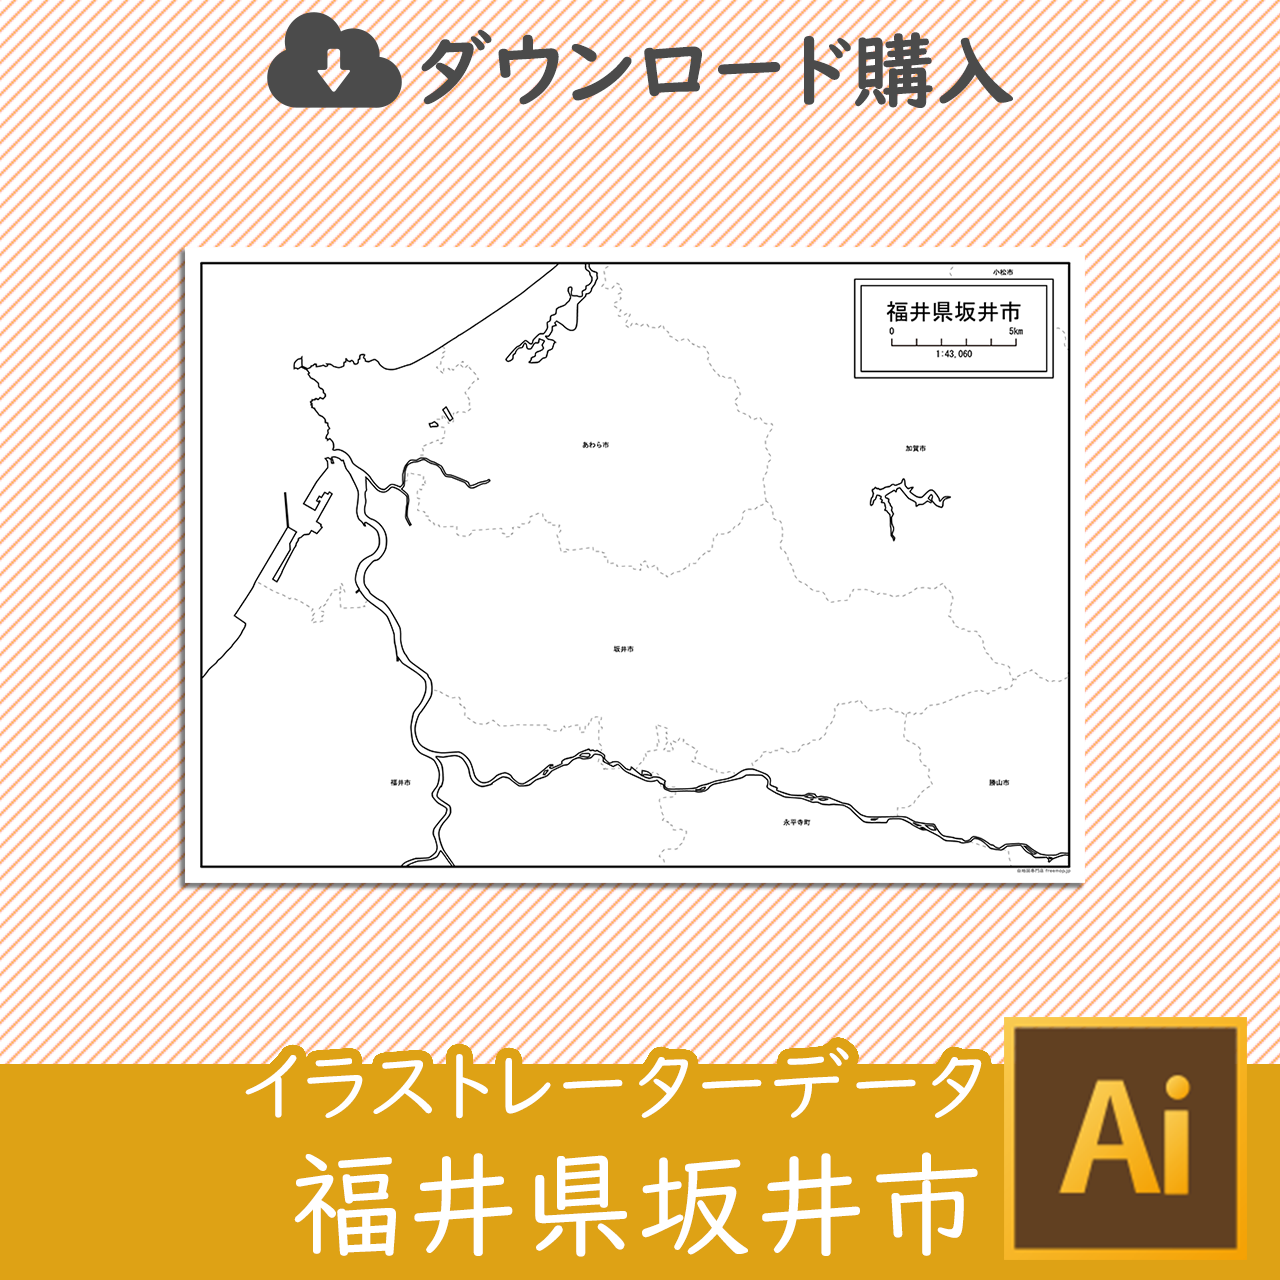 坂井市のaiデータのサムネイル画像